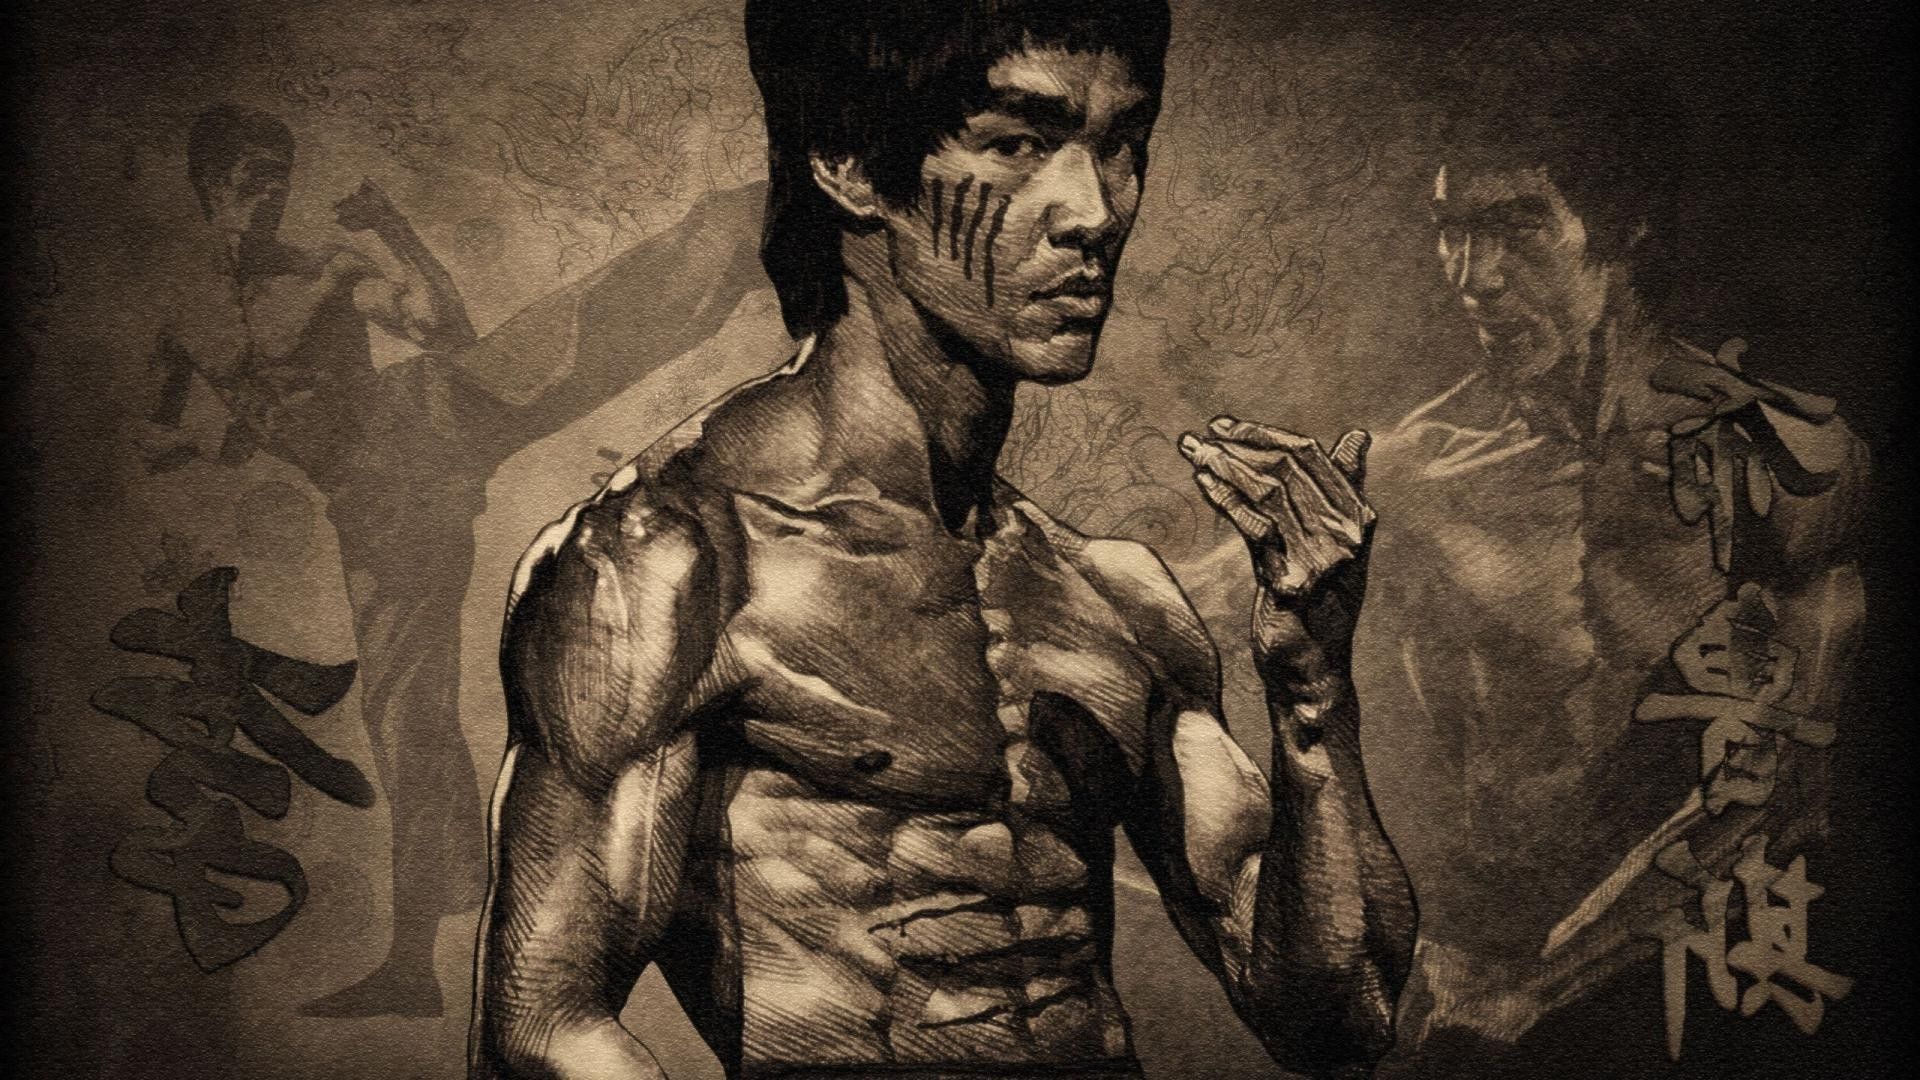 Bruce-Lee-Wallpapers-9.jpg